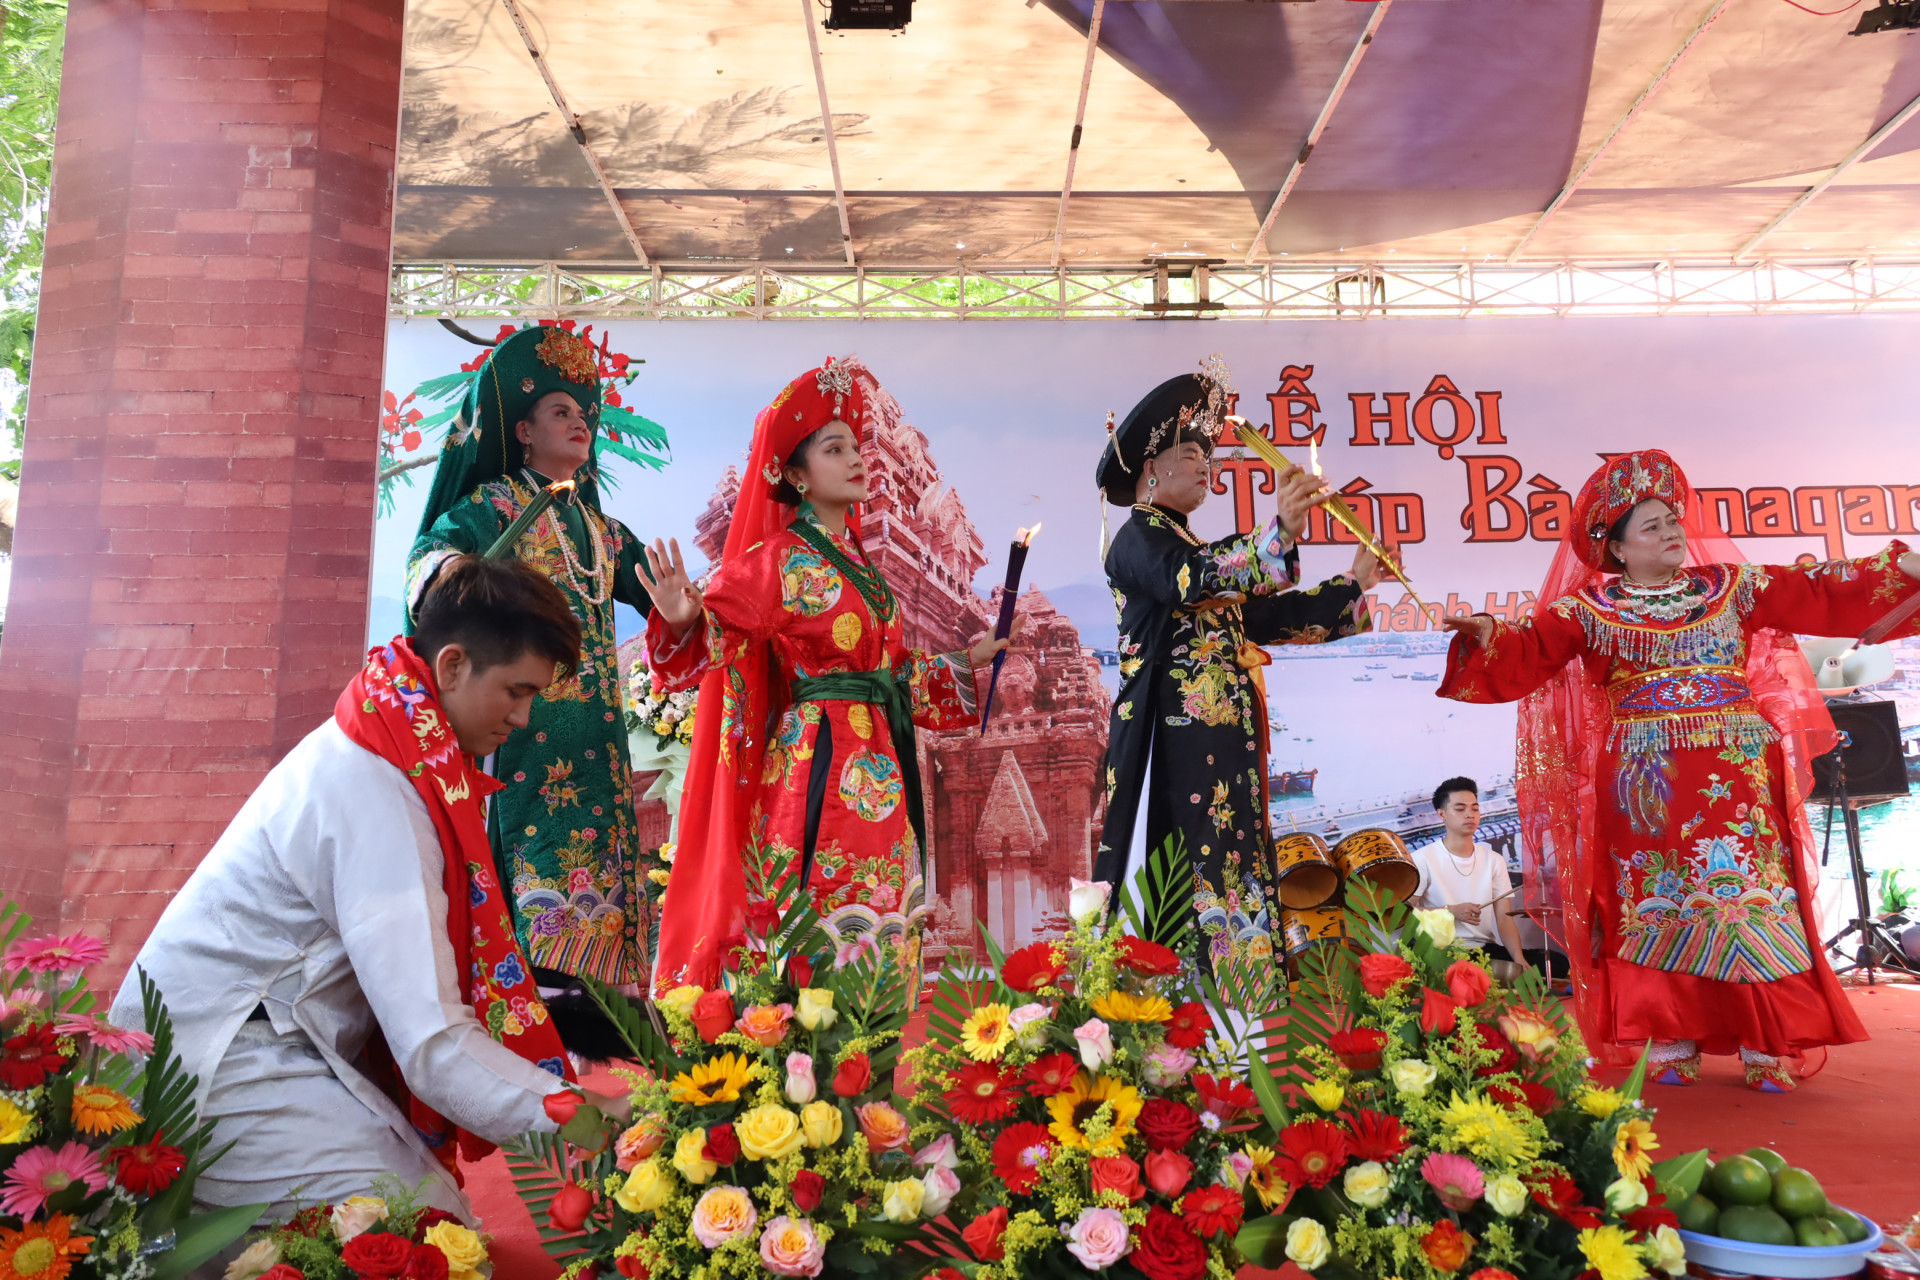 Pilgrims performing ritual singing and dancing at Ponagar Temple Festival

